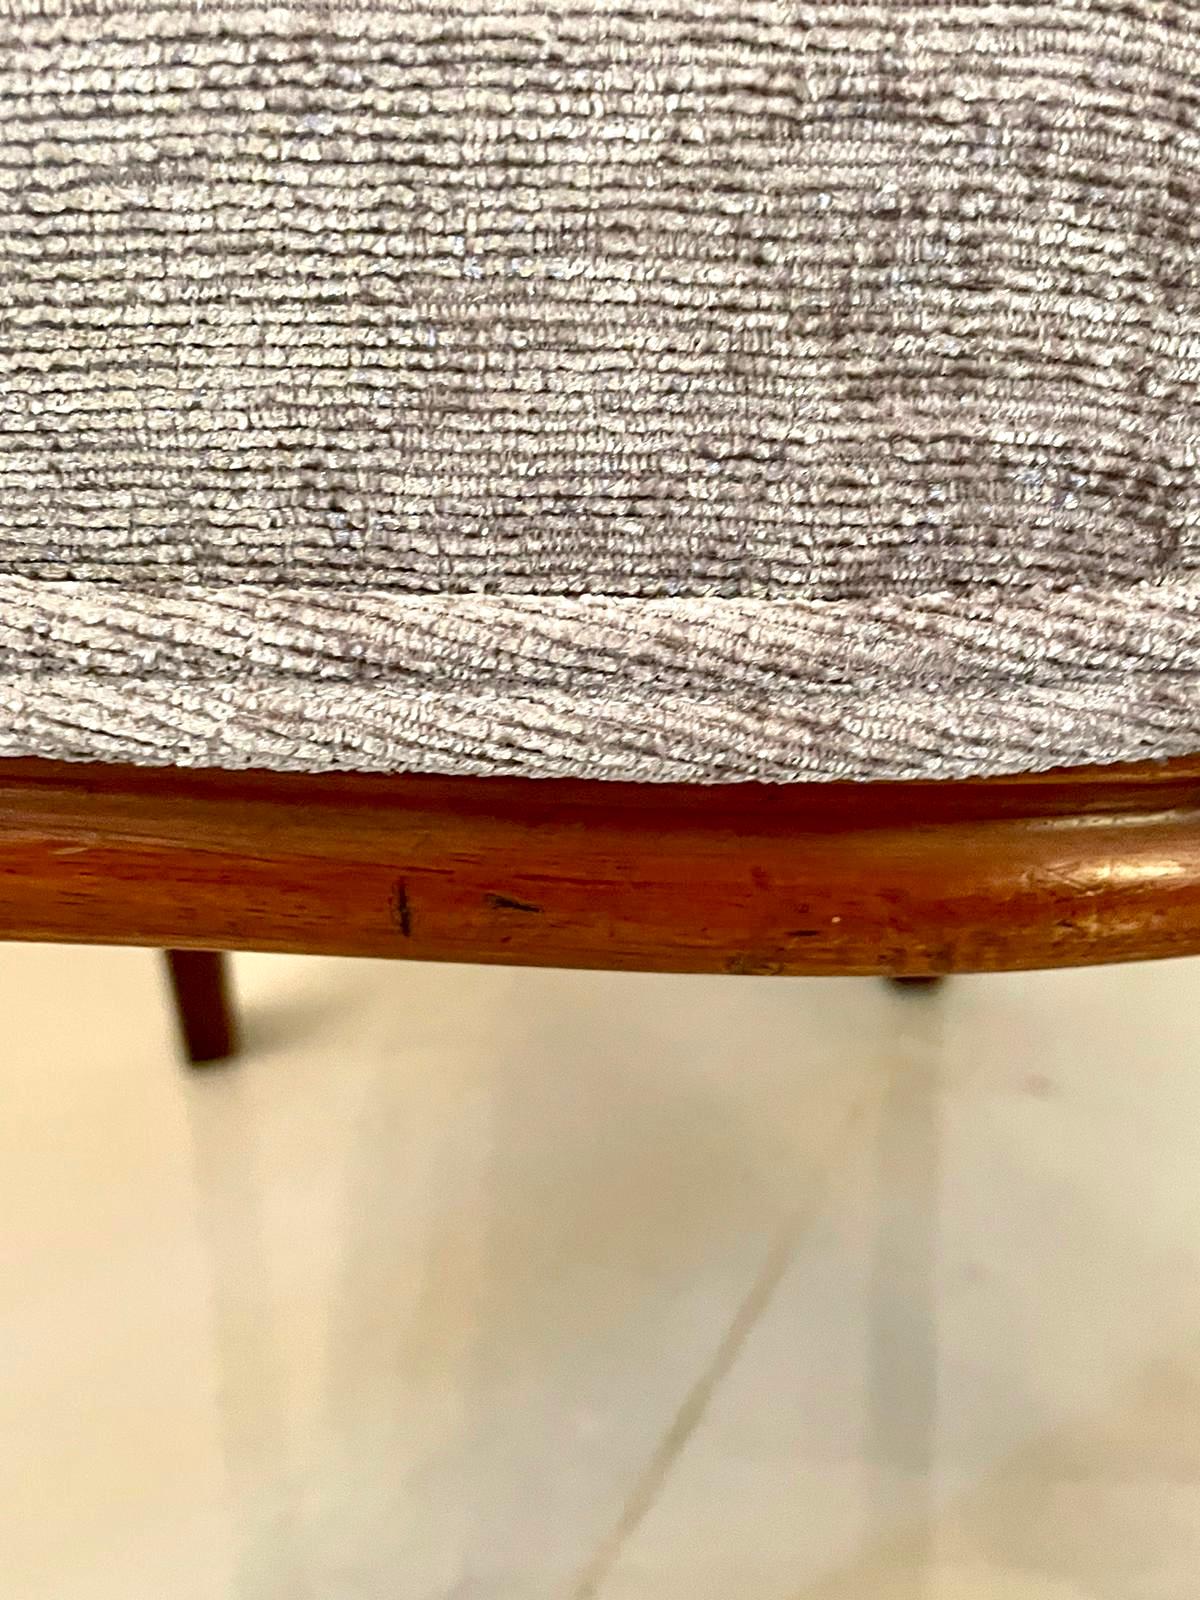 Antike Satz von sechs viktorianischen Mahagoni Esszimmerstühle mit einer Qualität Mahagoni obere Schiene und geformt geschnitzt zurück, neu gepolstert Serpentin geformt Sitze in einem hochwertigen grauen stilvollen Stoff, stehend auf geformte